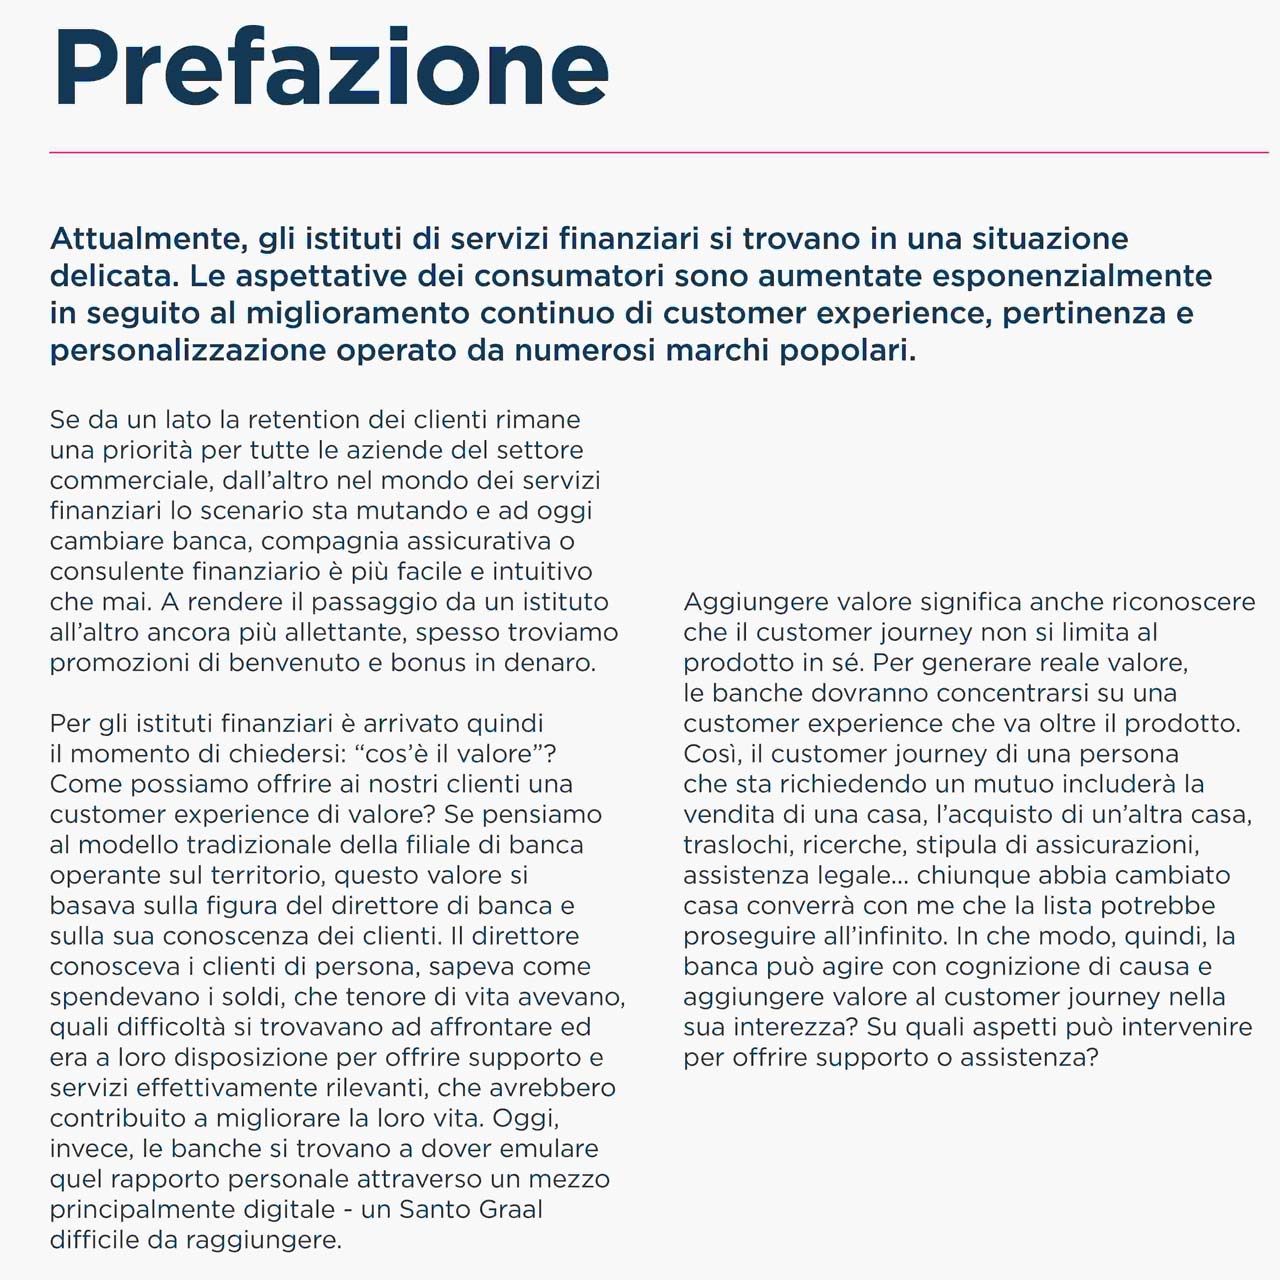 Bild einer italienischen Broschüre, die aus dem Englischen übersetzt würde